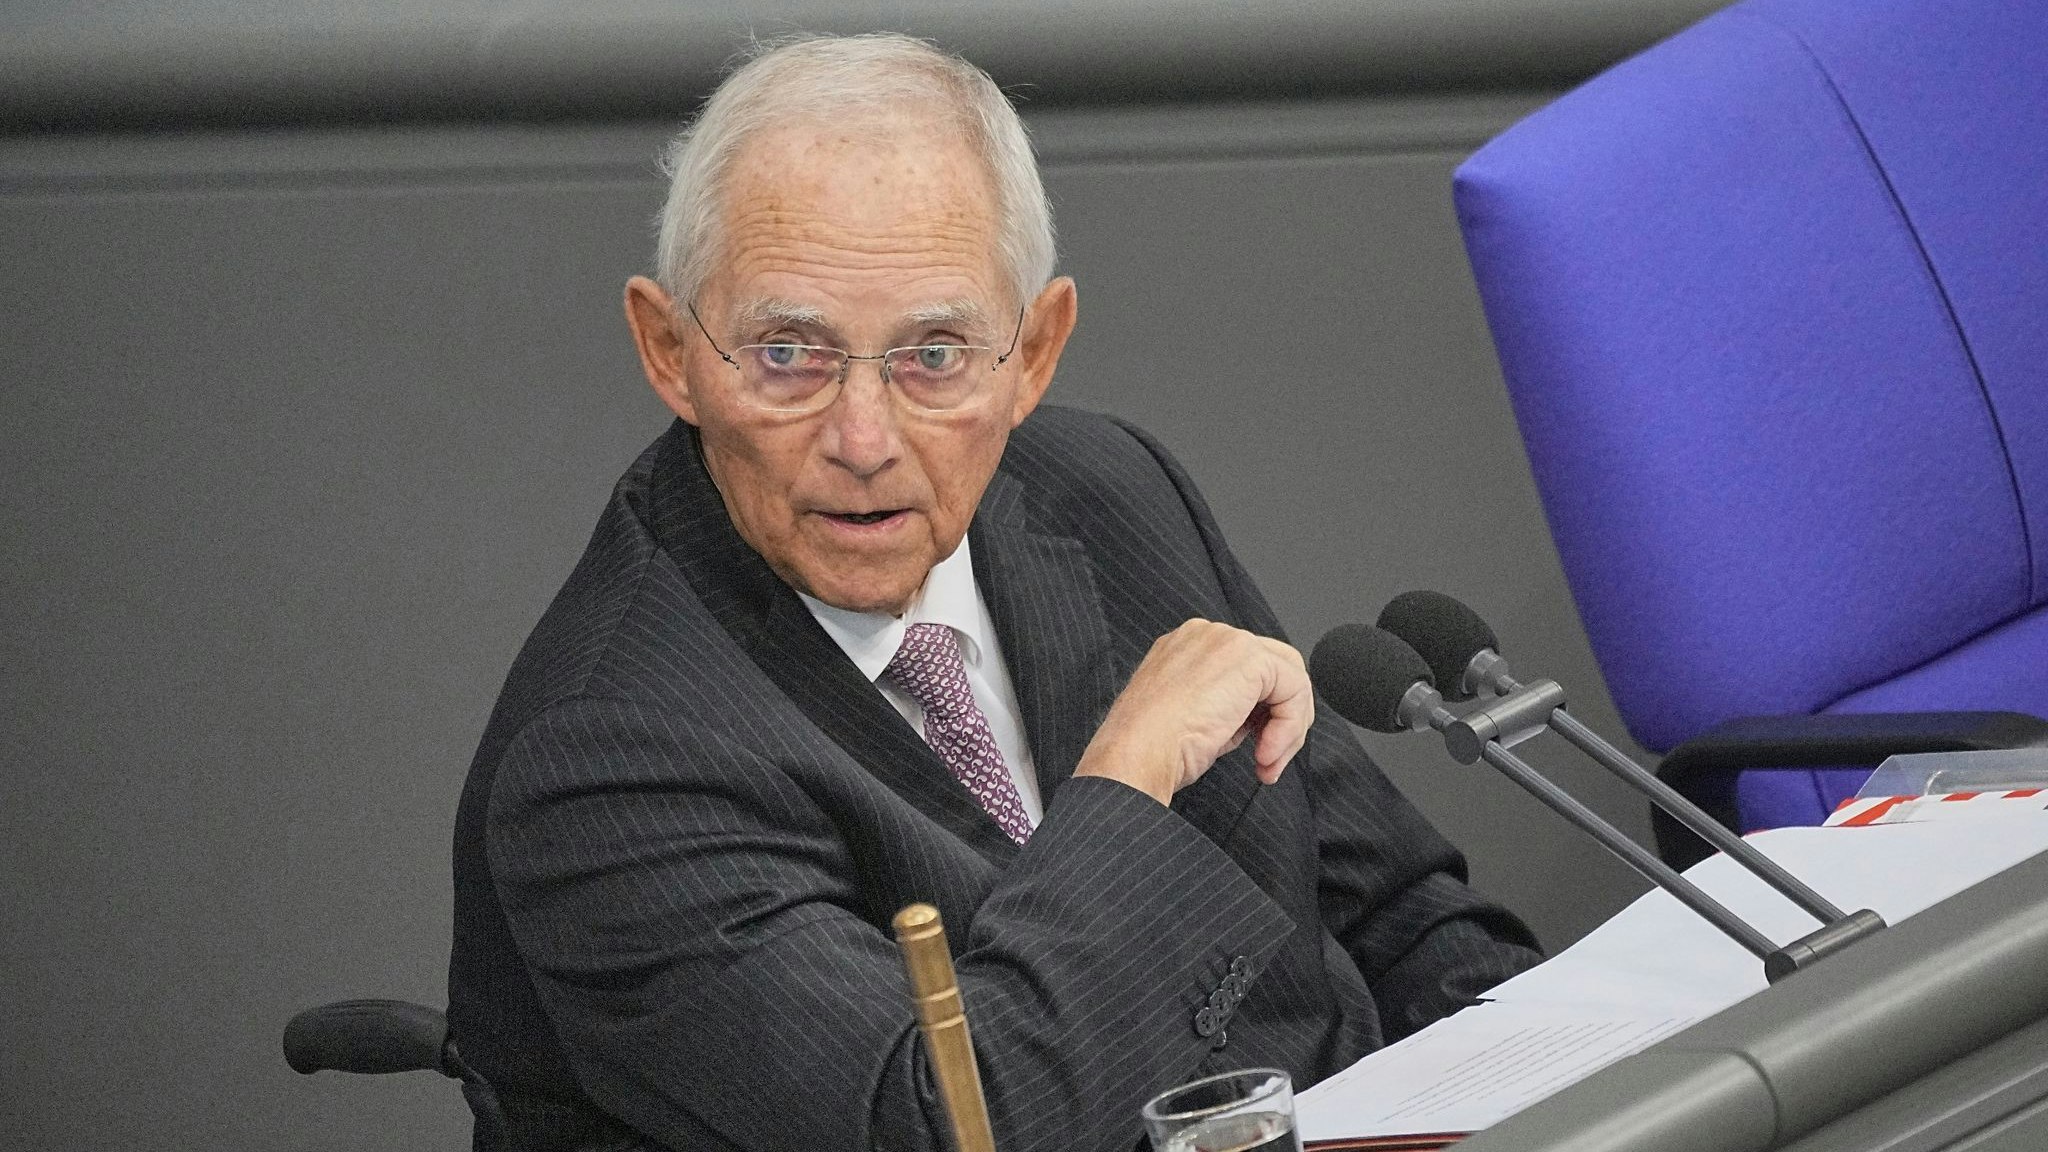 Dienstältester Abgeordneter des Deutschen Bundestages: Wolfgang Schäble. Foto: dpa/Kappeler